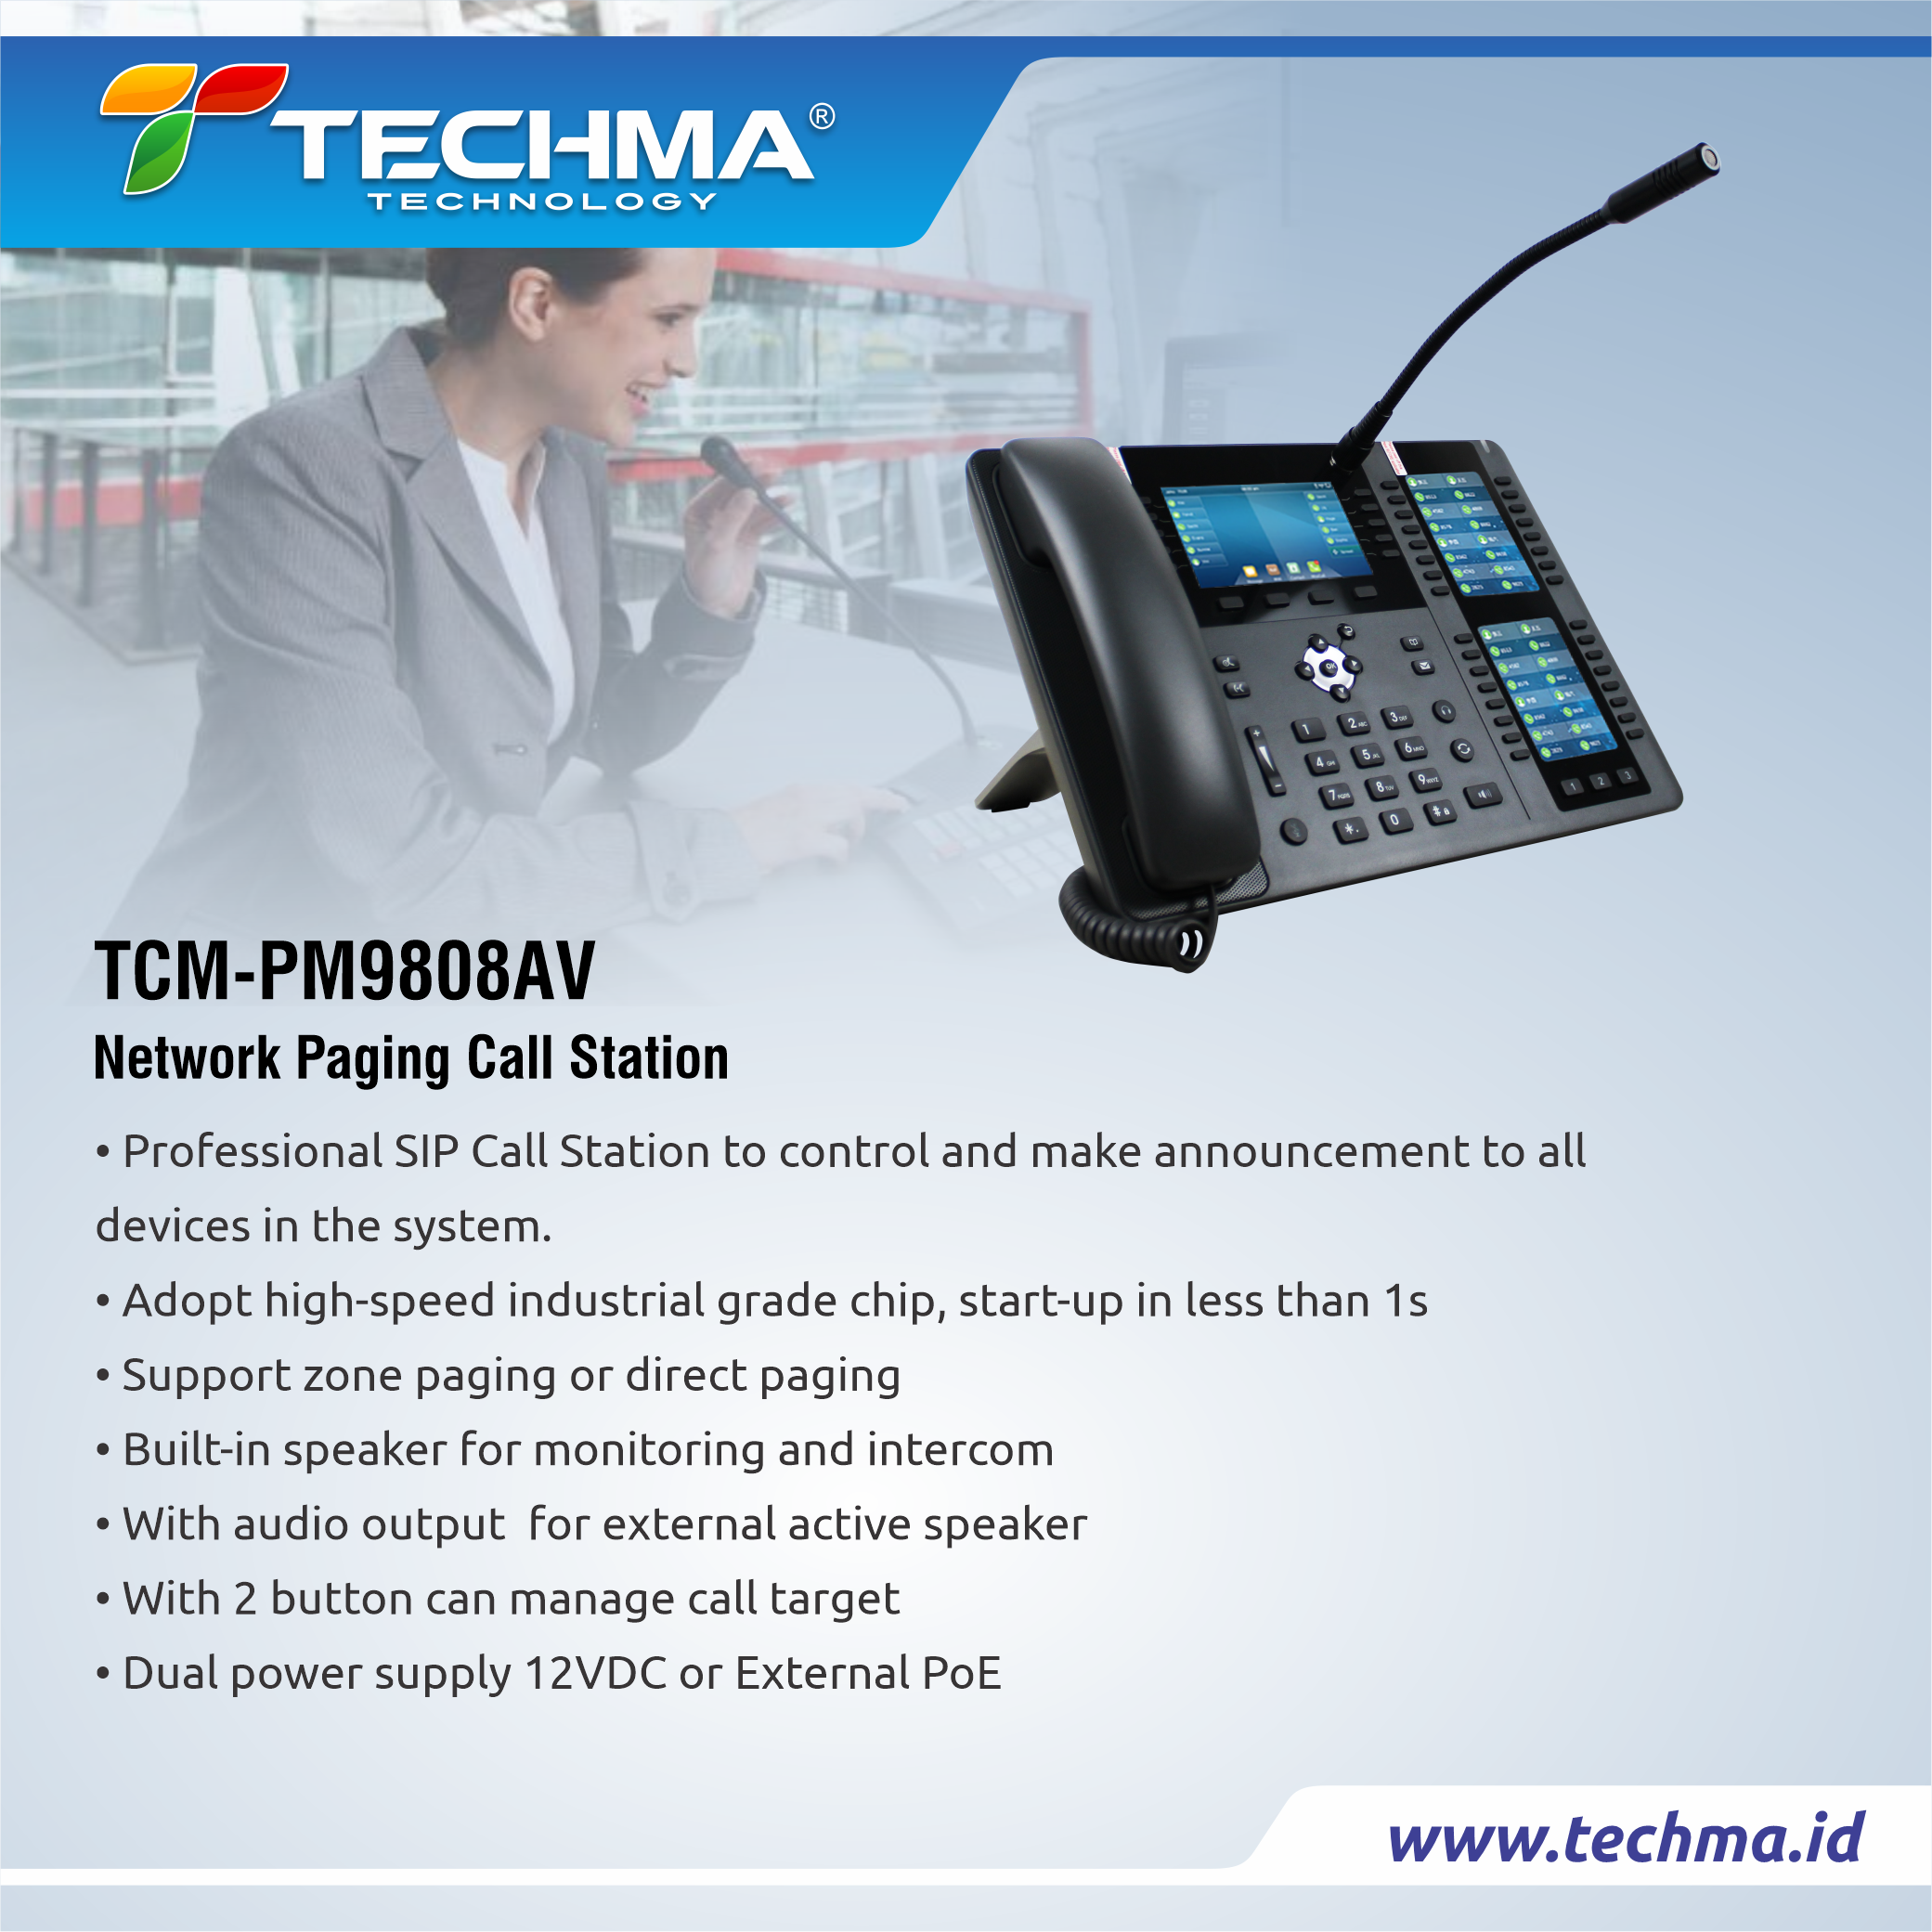 TCM-PM9808AV web 2